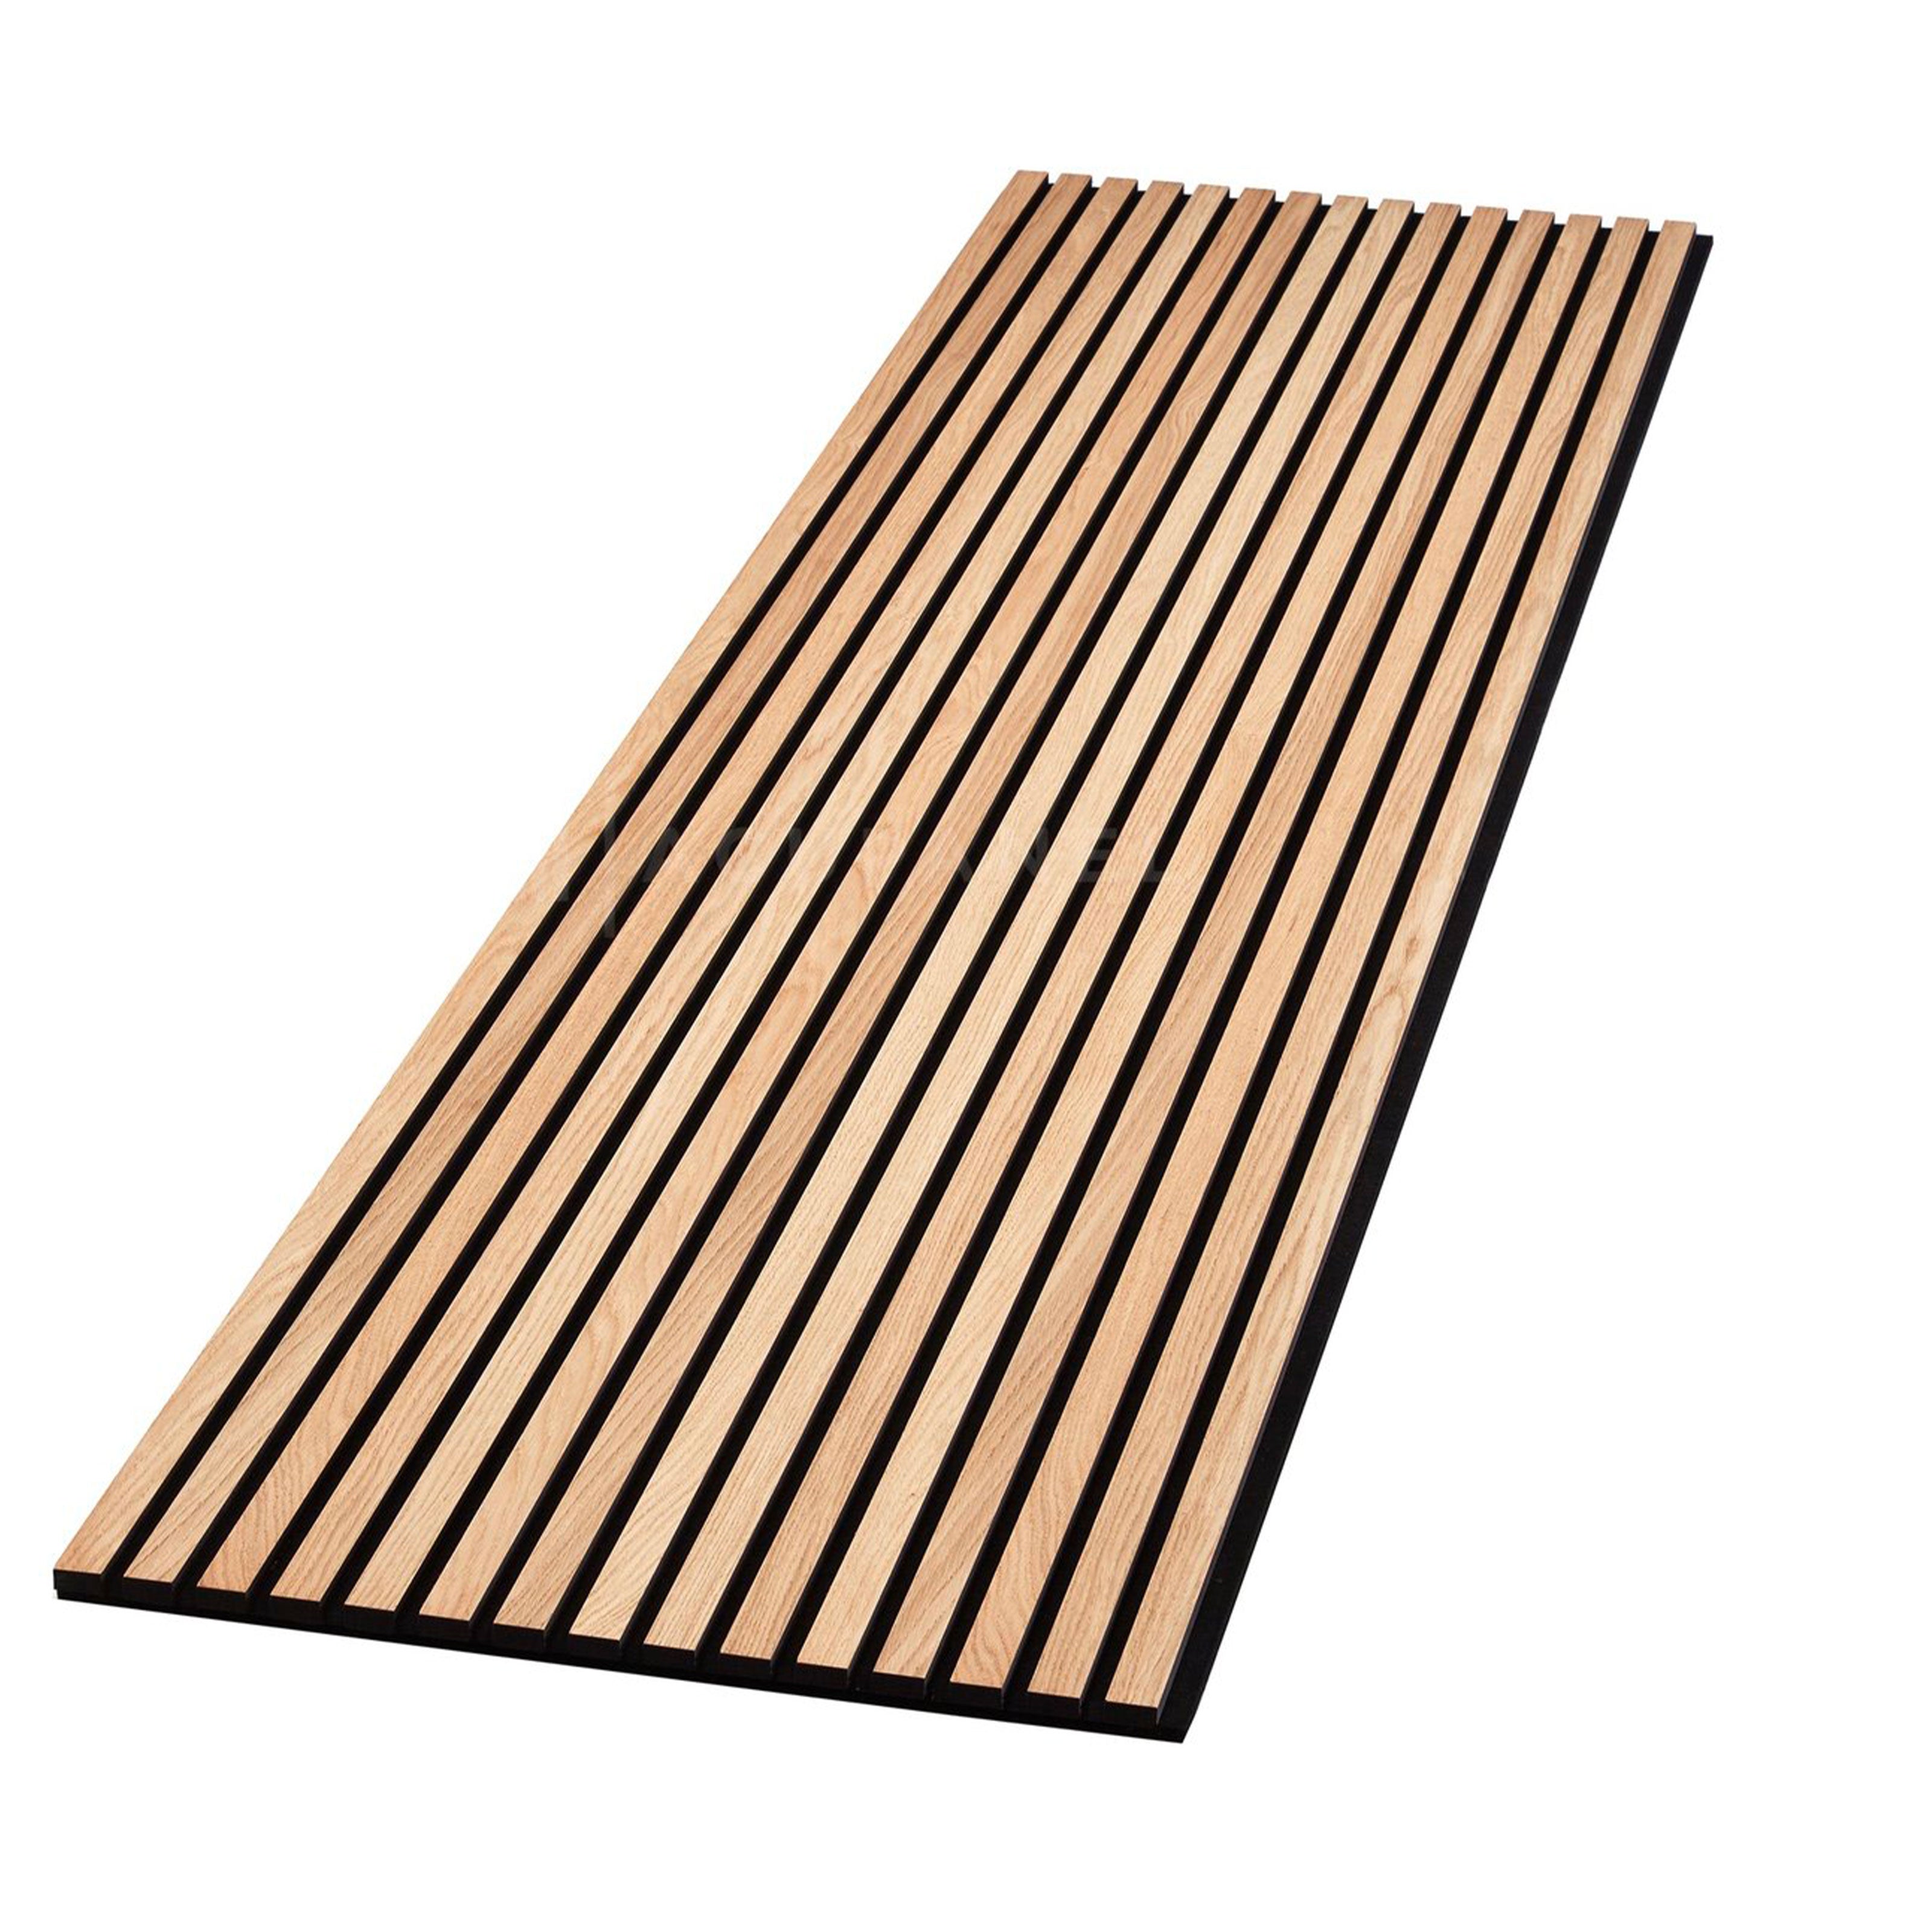 Panel acústico Fieltro y fibra de madera Tiras rayadas ROBLE CLARO  120x34x1,5